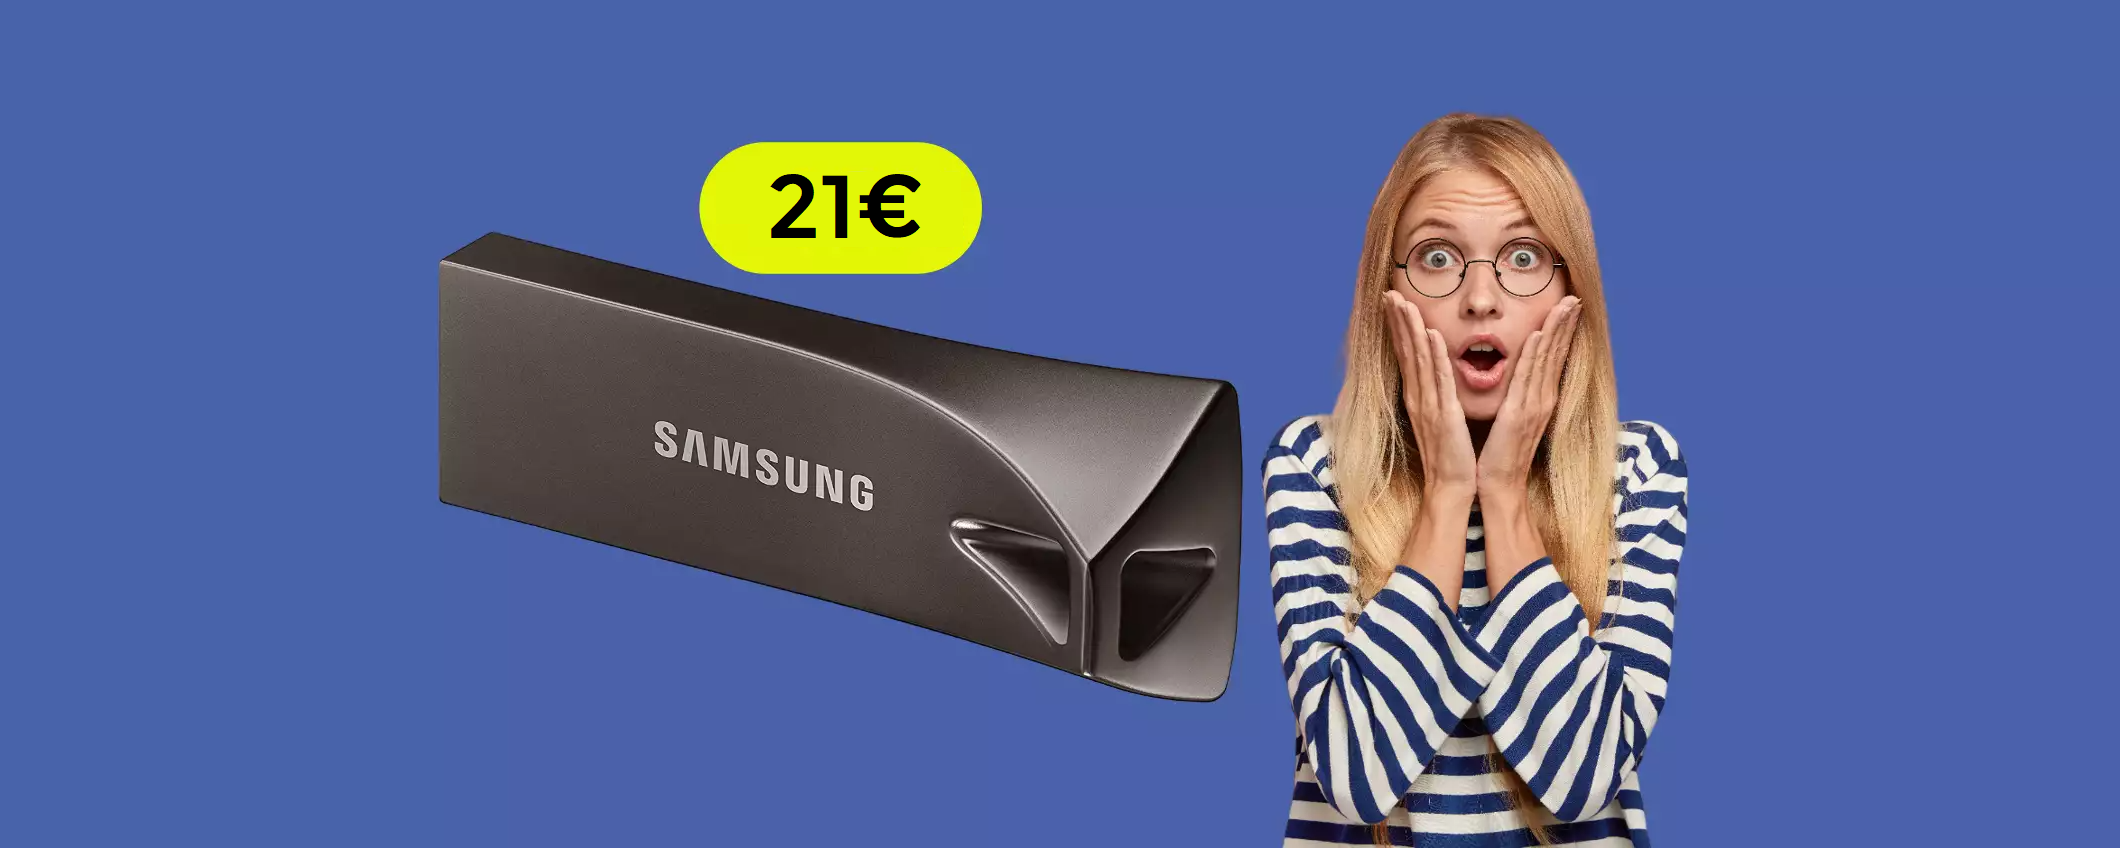 Chiavetta USB 128GB Samsung al prezzo più basso di sempre: solo 21€